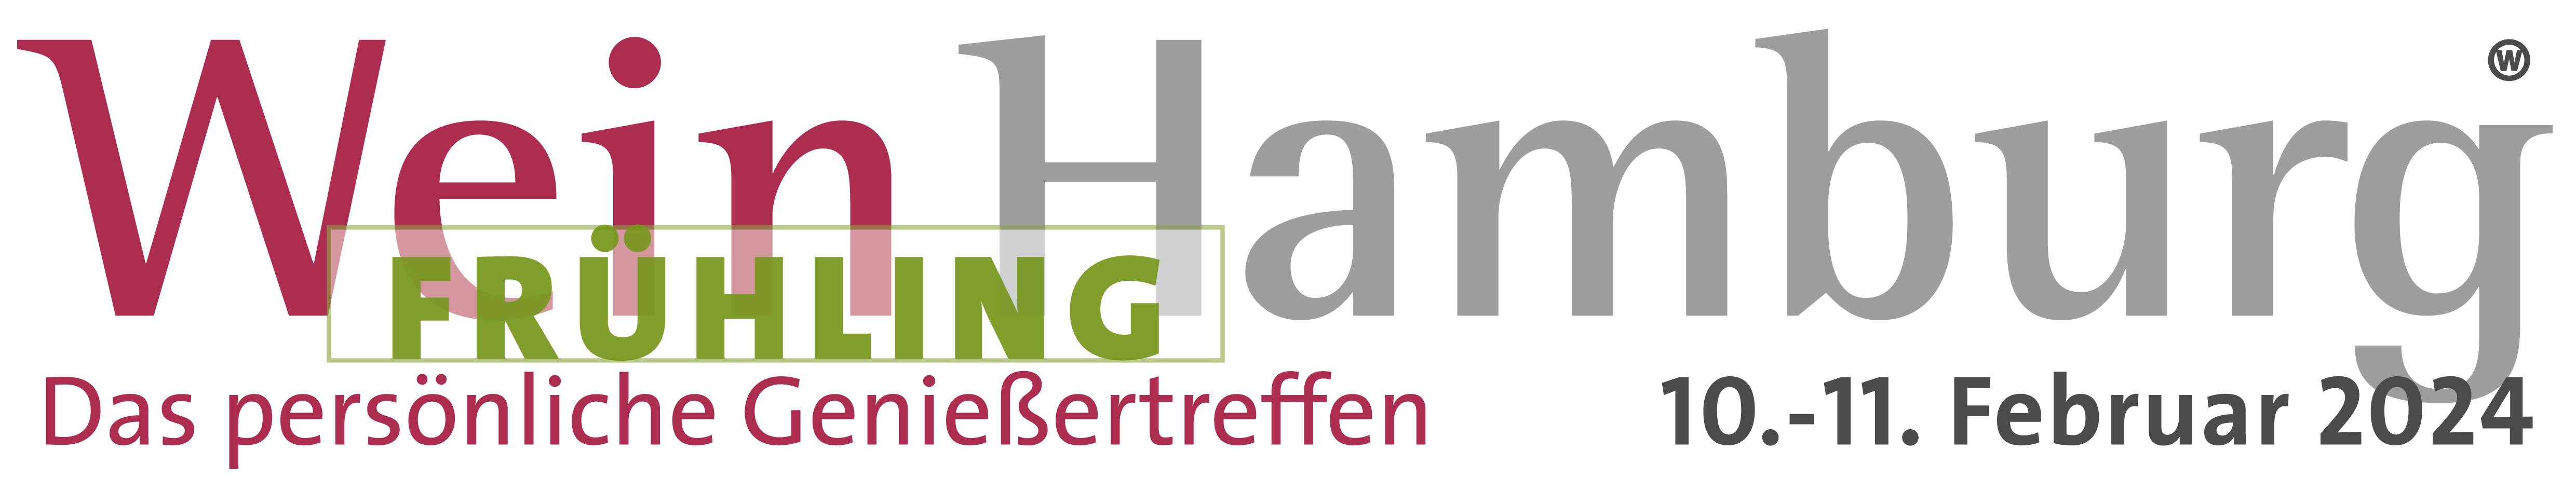 WeinHamburg Frühling Logo